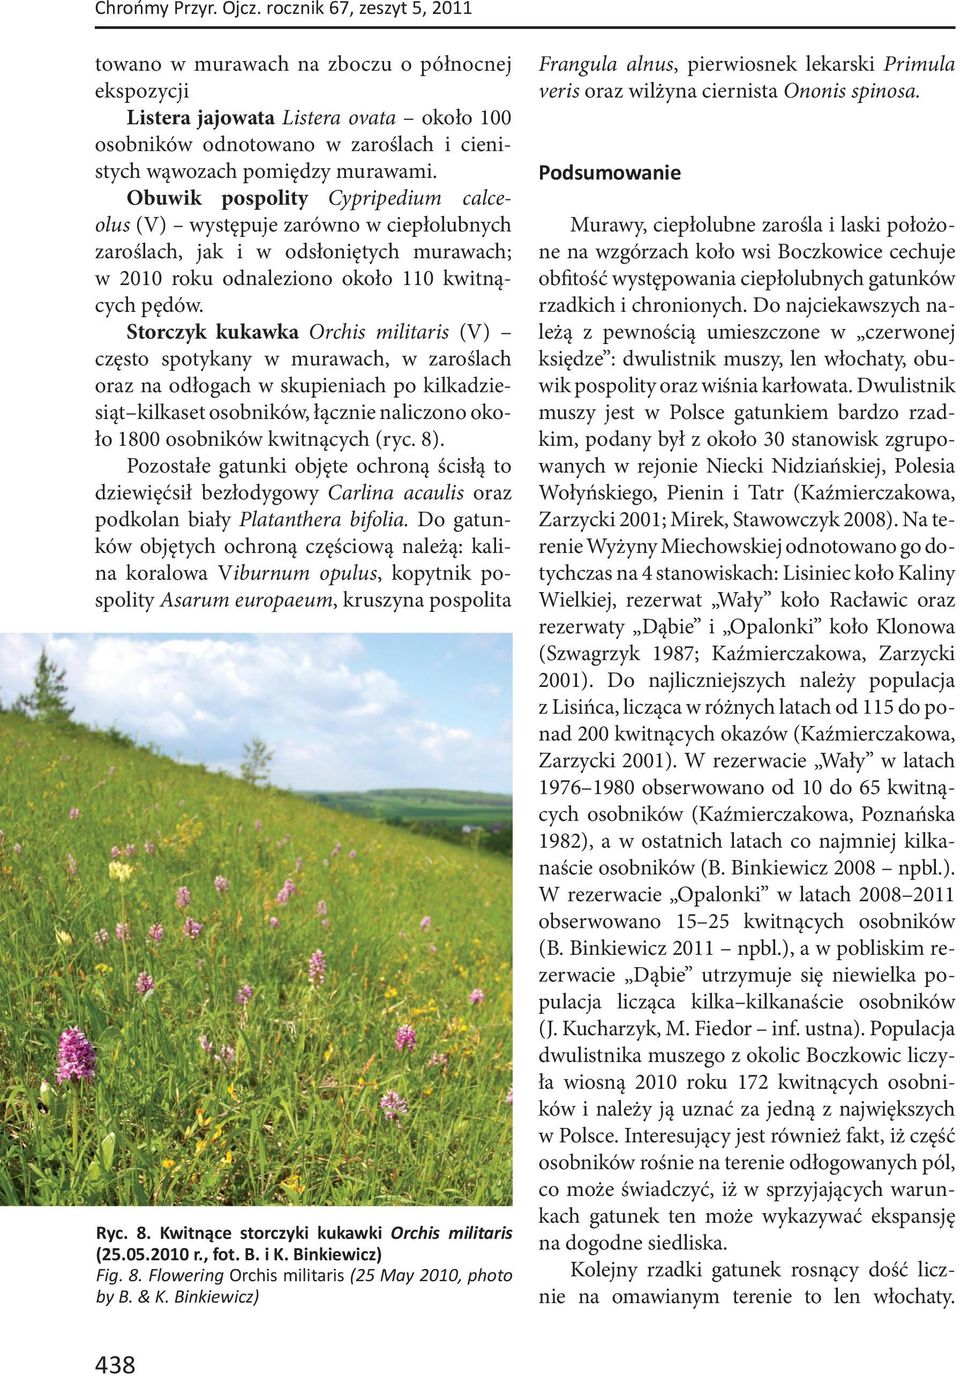 Obuwik pospolity Cypripedium calceolus (V) występuje zarówno w ciepłolubnych zaroślach, jak i w odsłoniętych murawach; w 2010 roku odnaleziono około 110 kwitnących pędów.